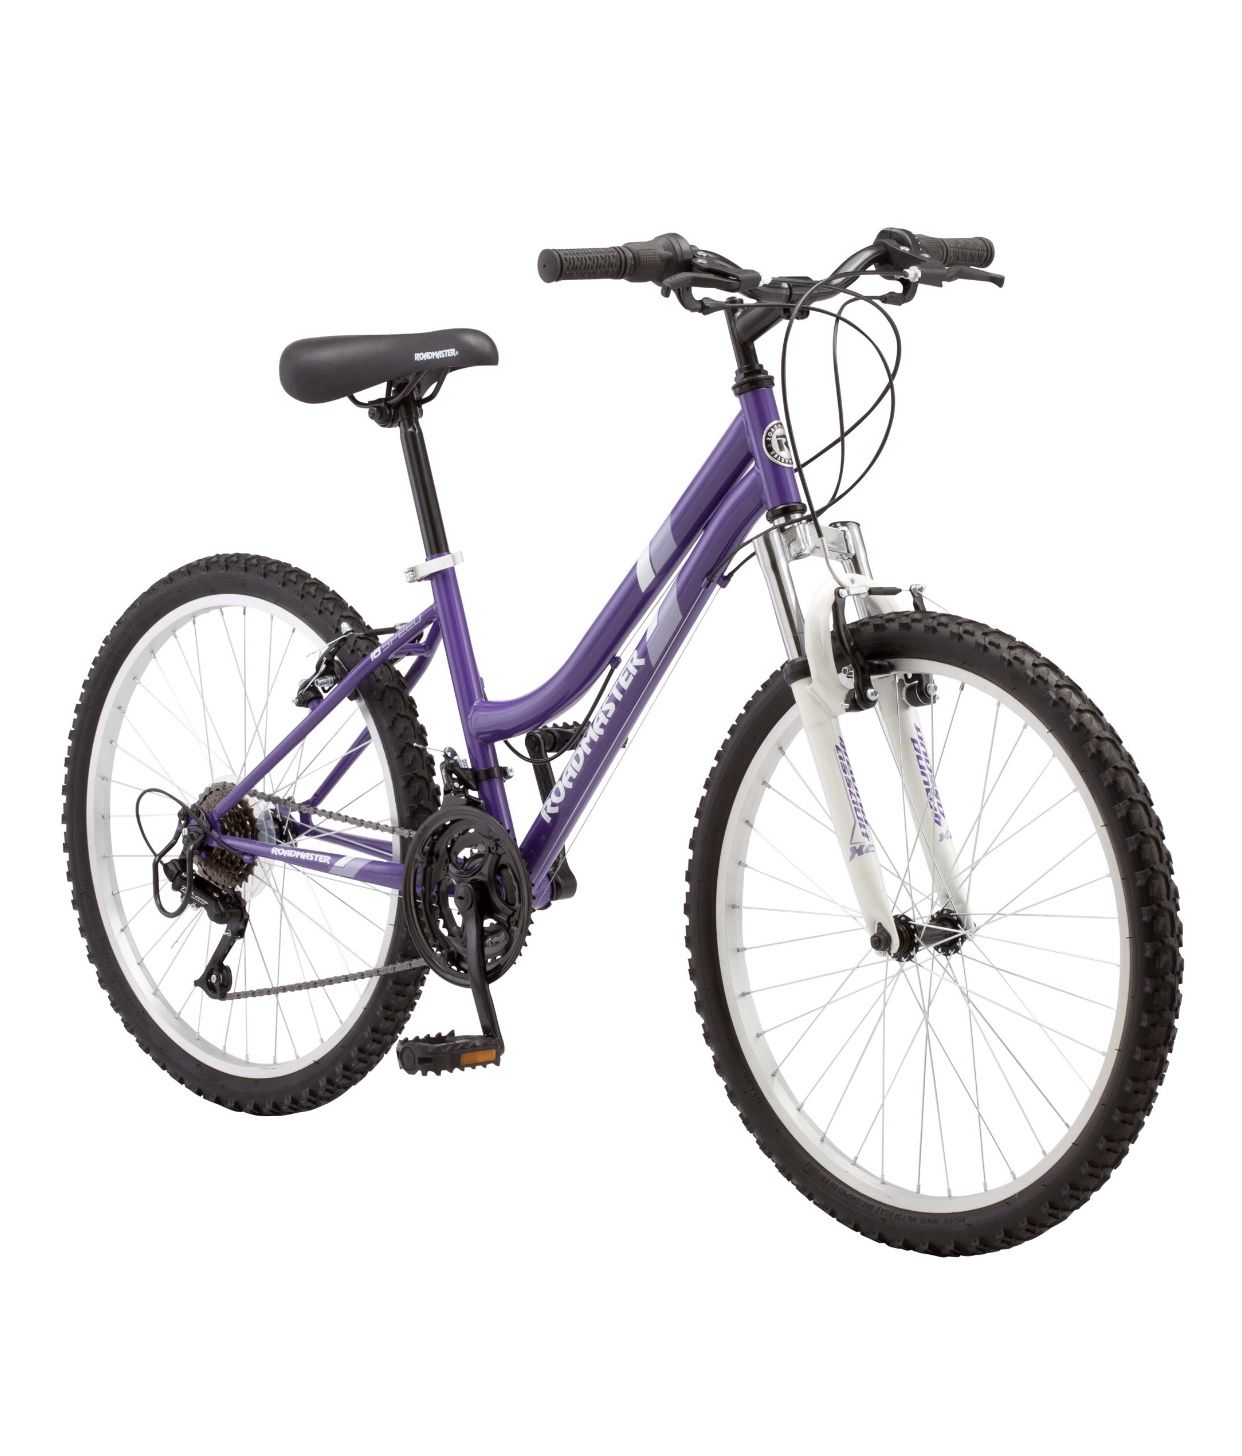 Roadmaster 24" Granite Peak Girls Mountain Bike, Purple